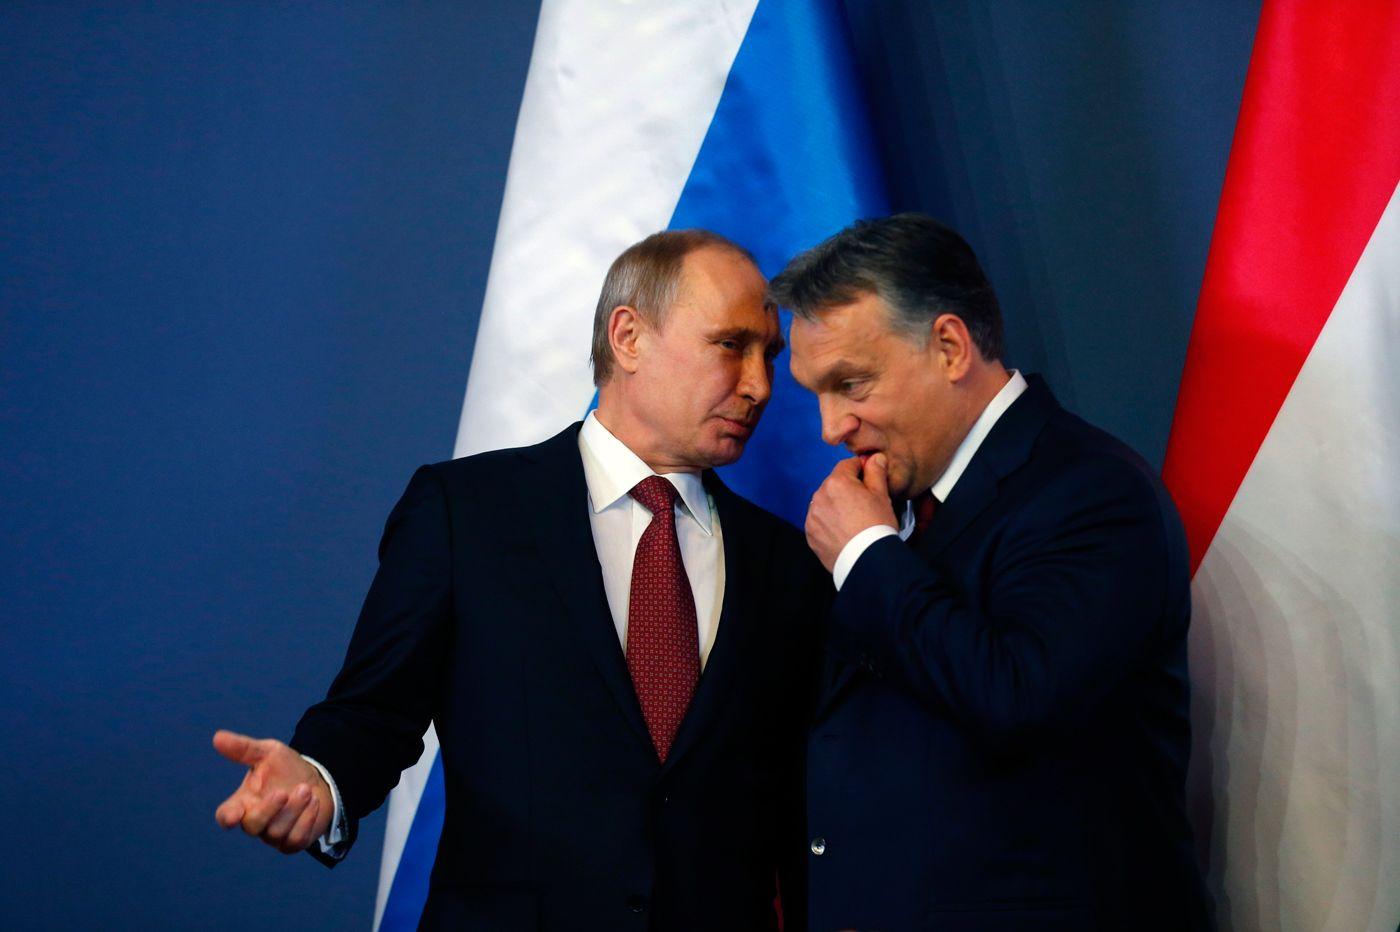 Газ, АЭС и санкции. Венгерский эксперт – о том, что стоит за встречей Путина и Орбана